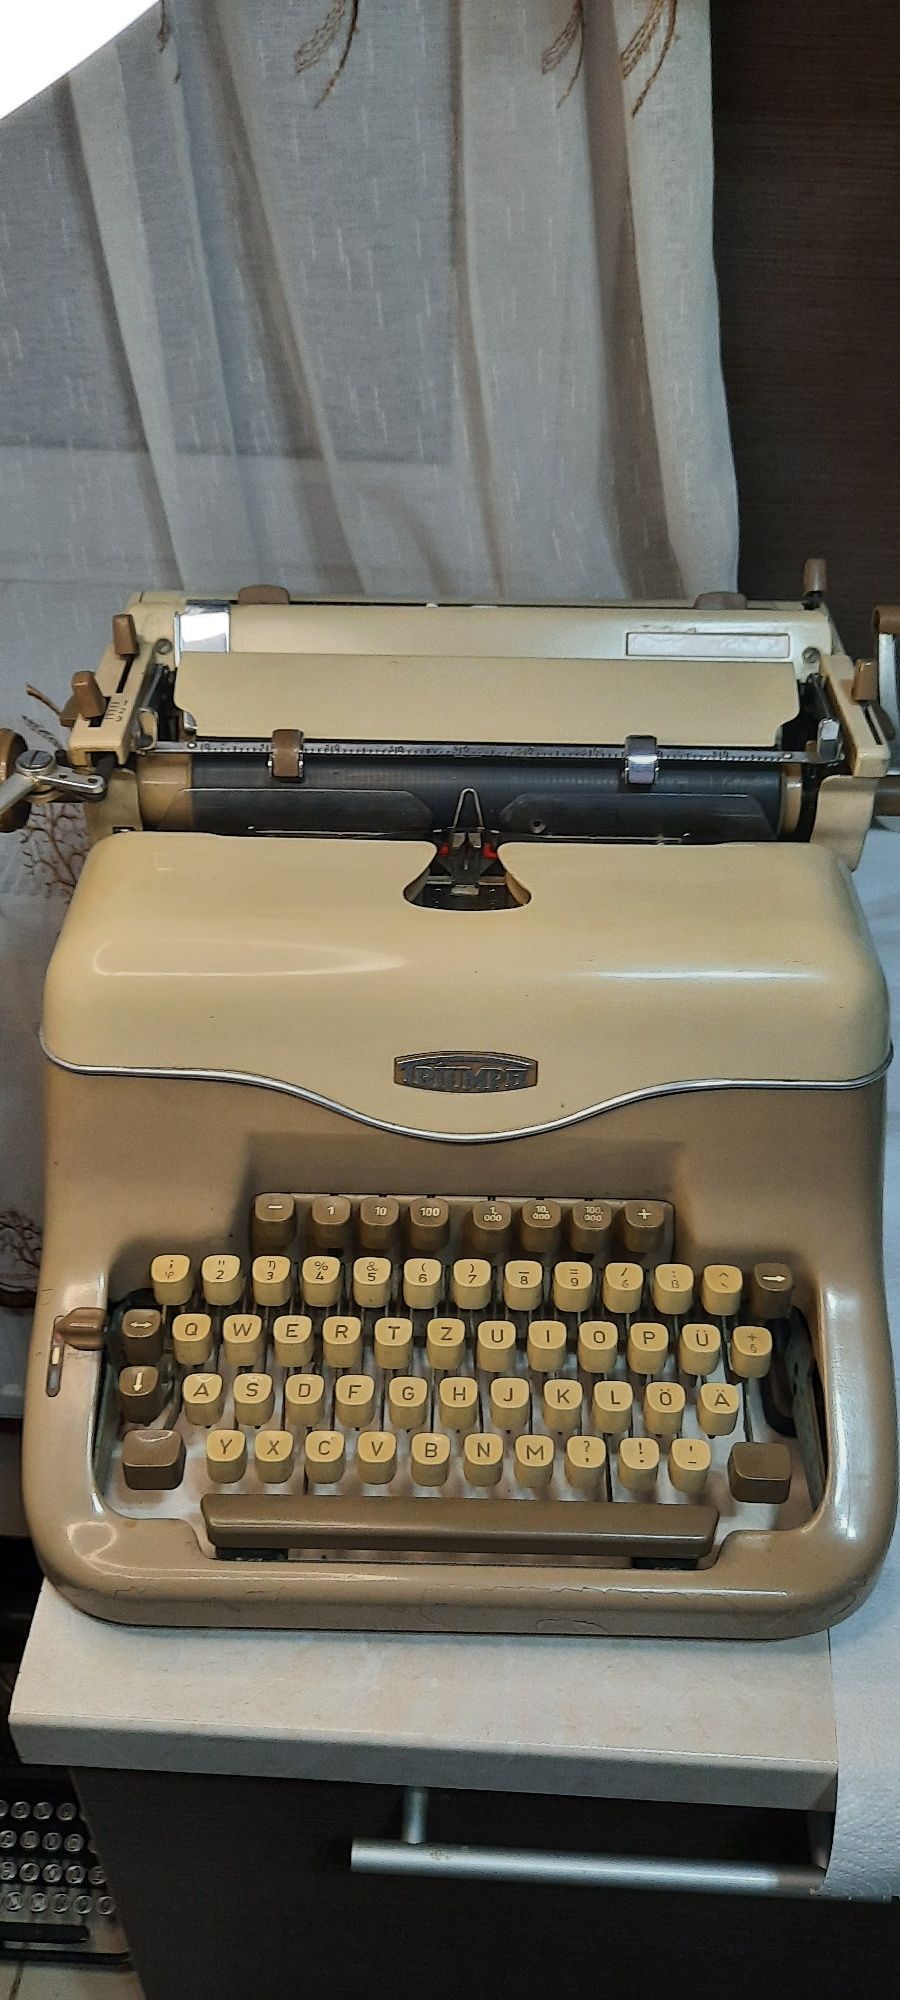 Mașină de scris Triumph Matura 1950